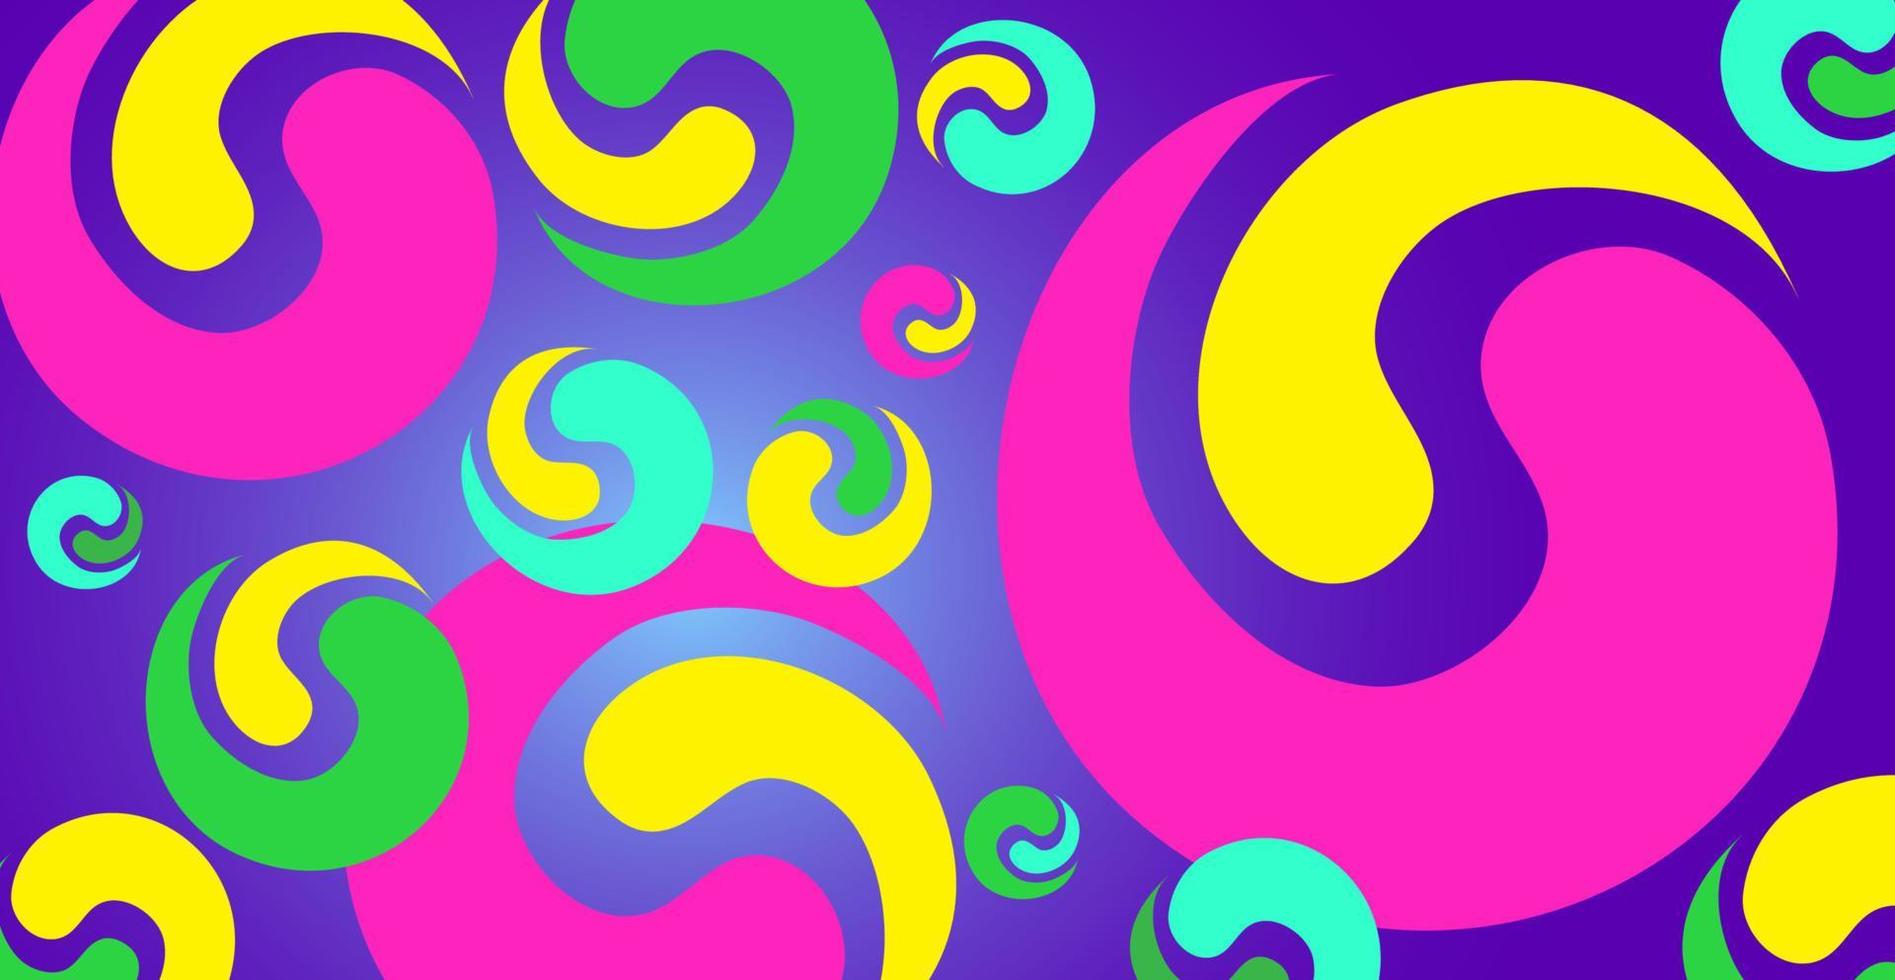 padrão simples com formas geométricas. elementos yin yang em diferentes paletas de cores em um fundo gradiente. vetor